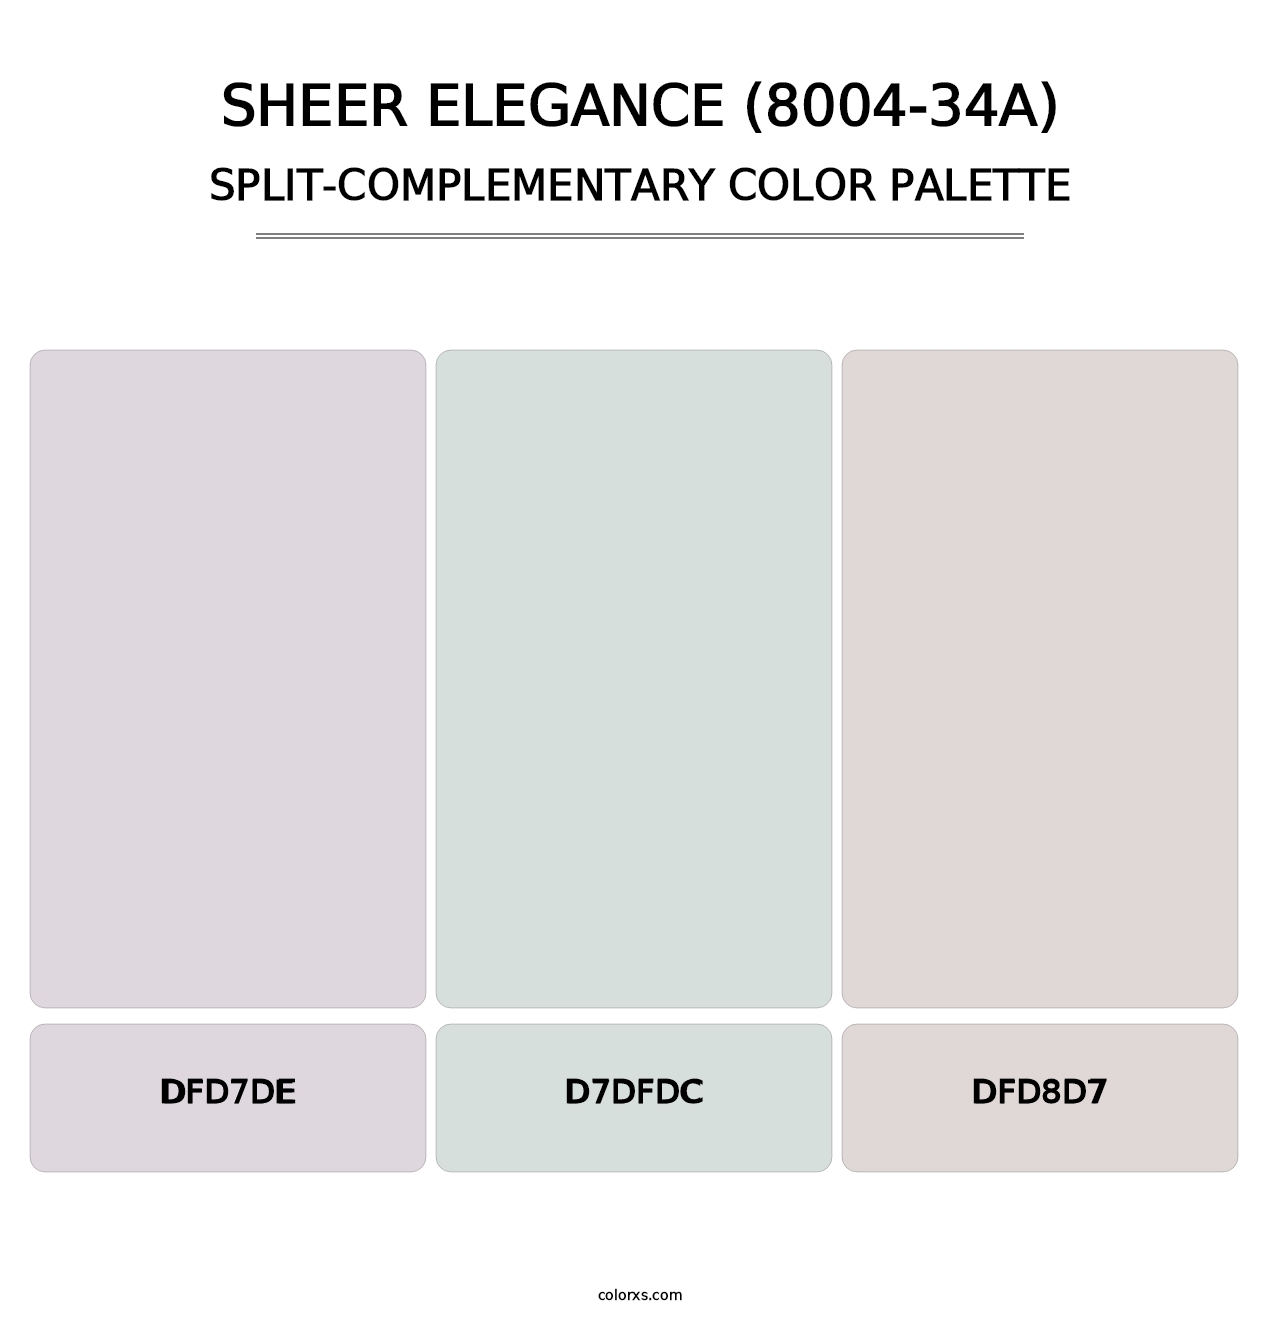 Sheer Elegance (8004-34A) - Split-Complementary Color Palette